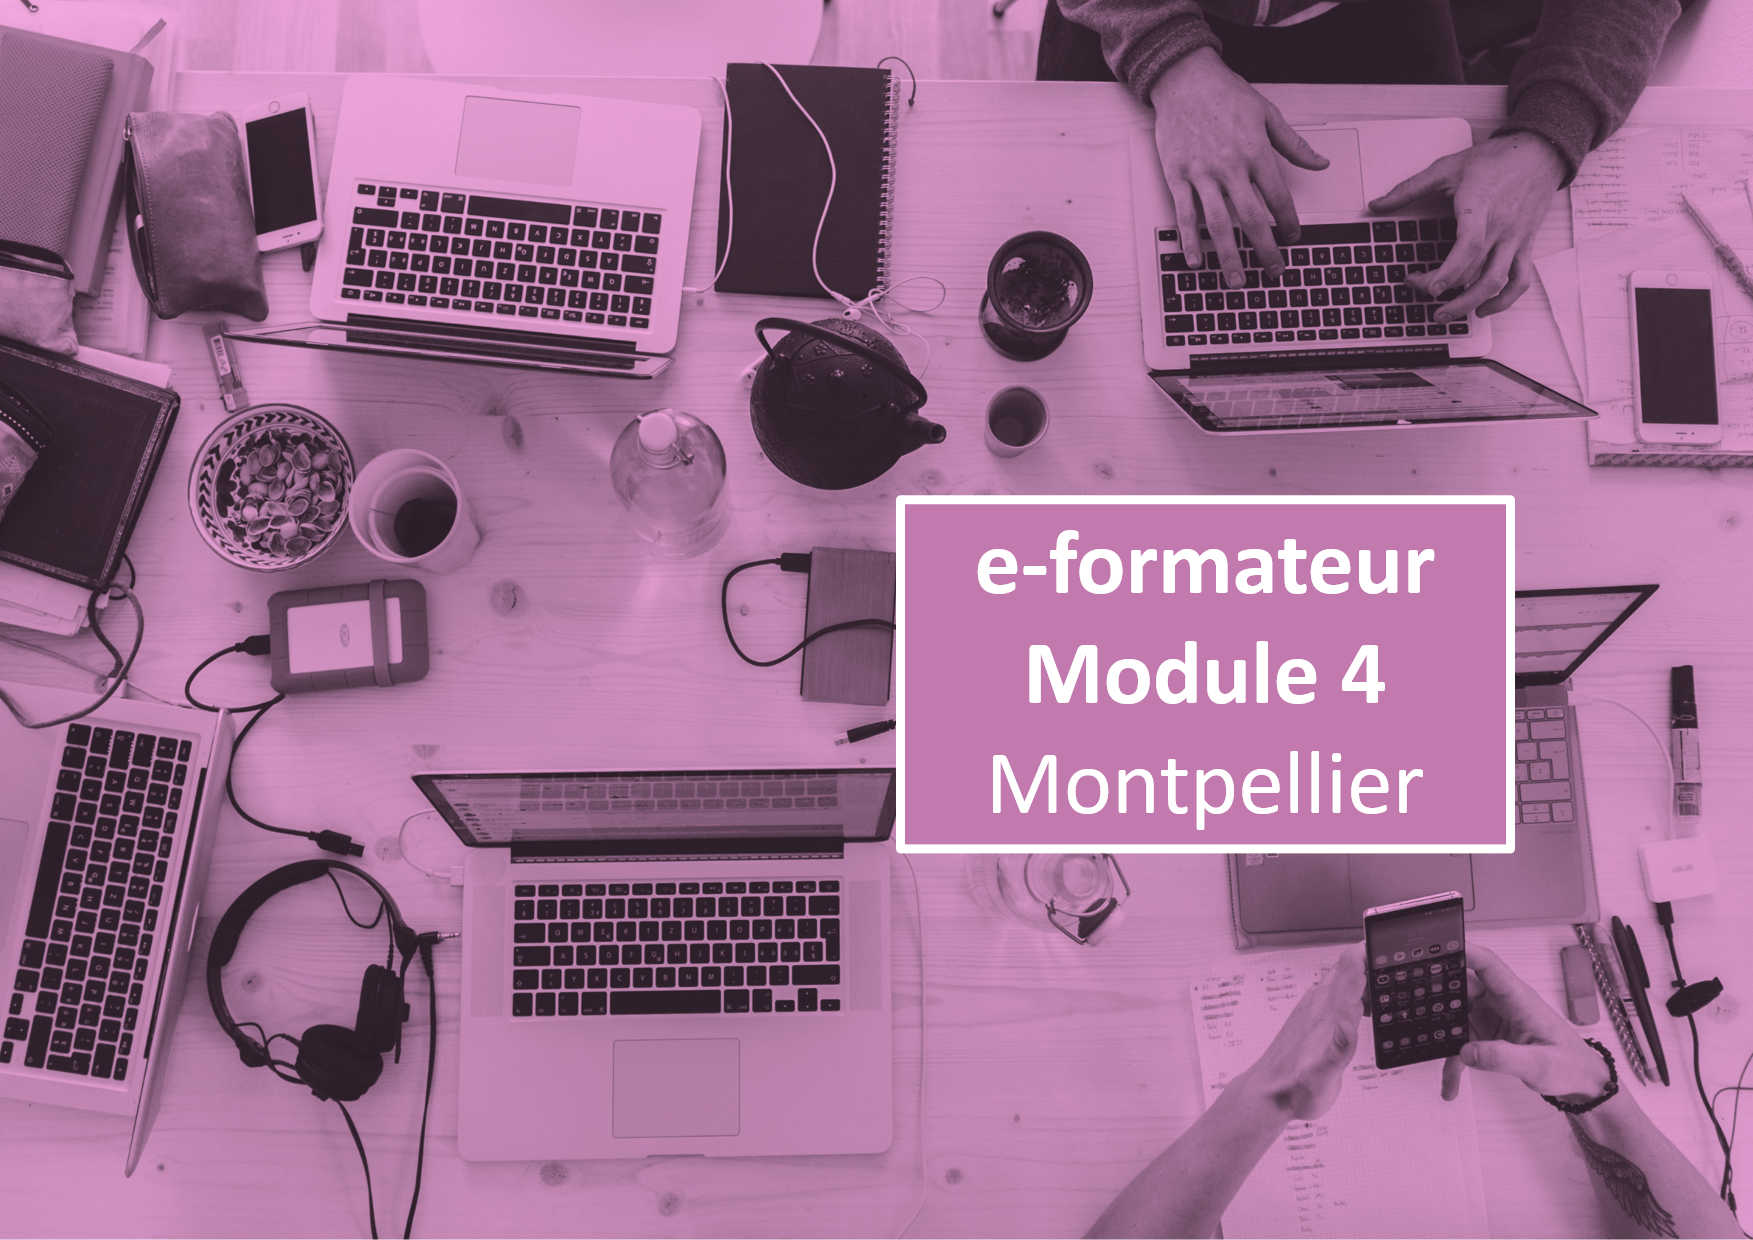 e-formateur Module 4 Montpellier